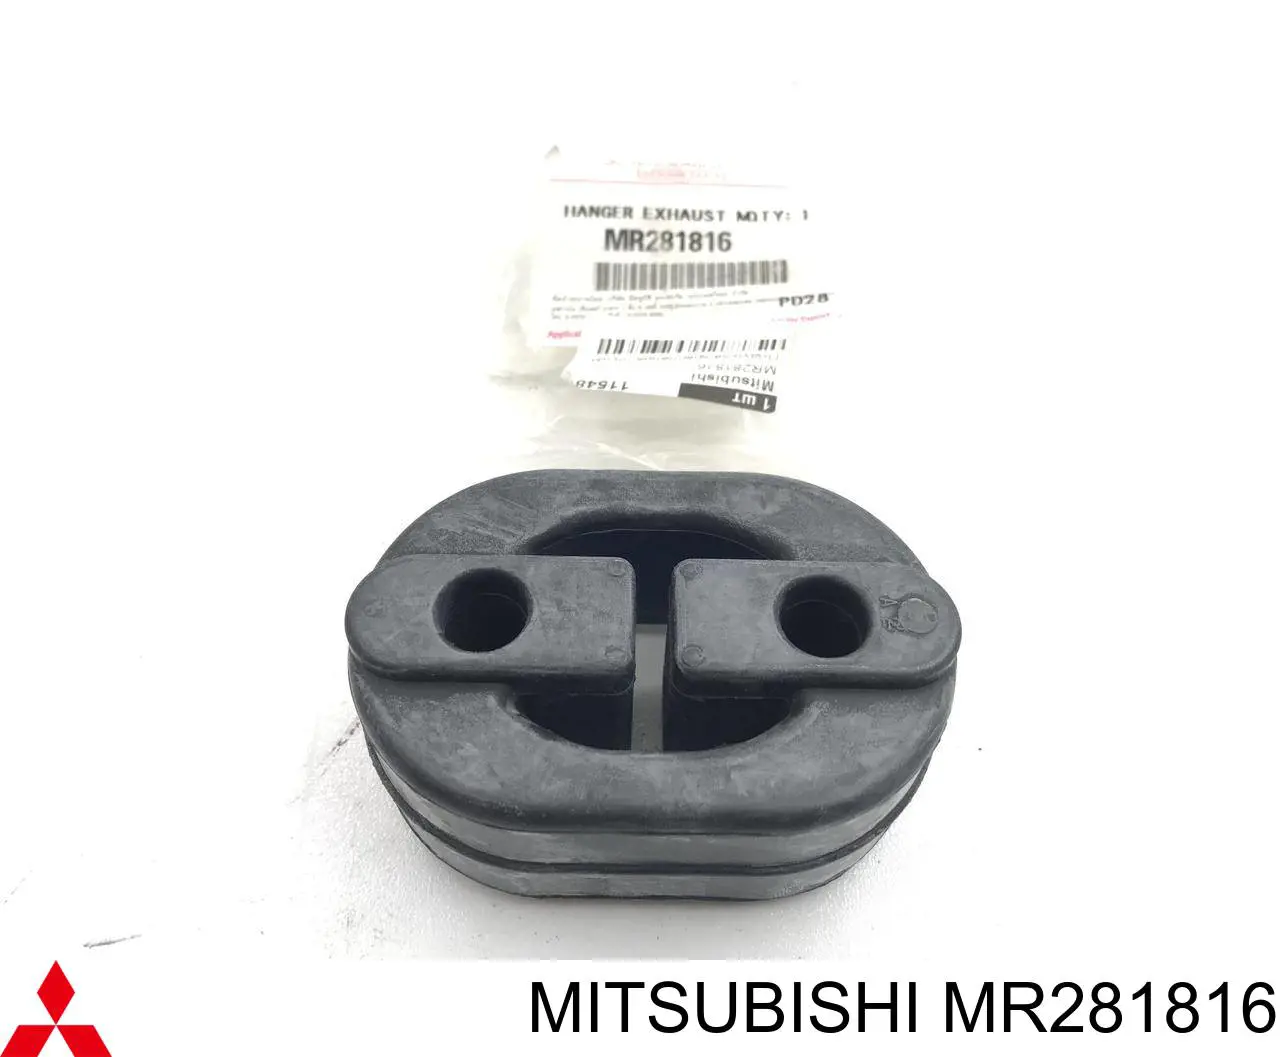 MR281816 Mitsubishi coxim de fixação do silenciador